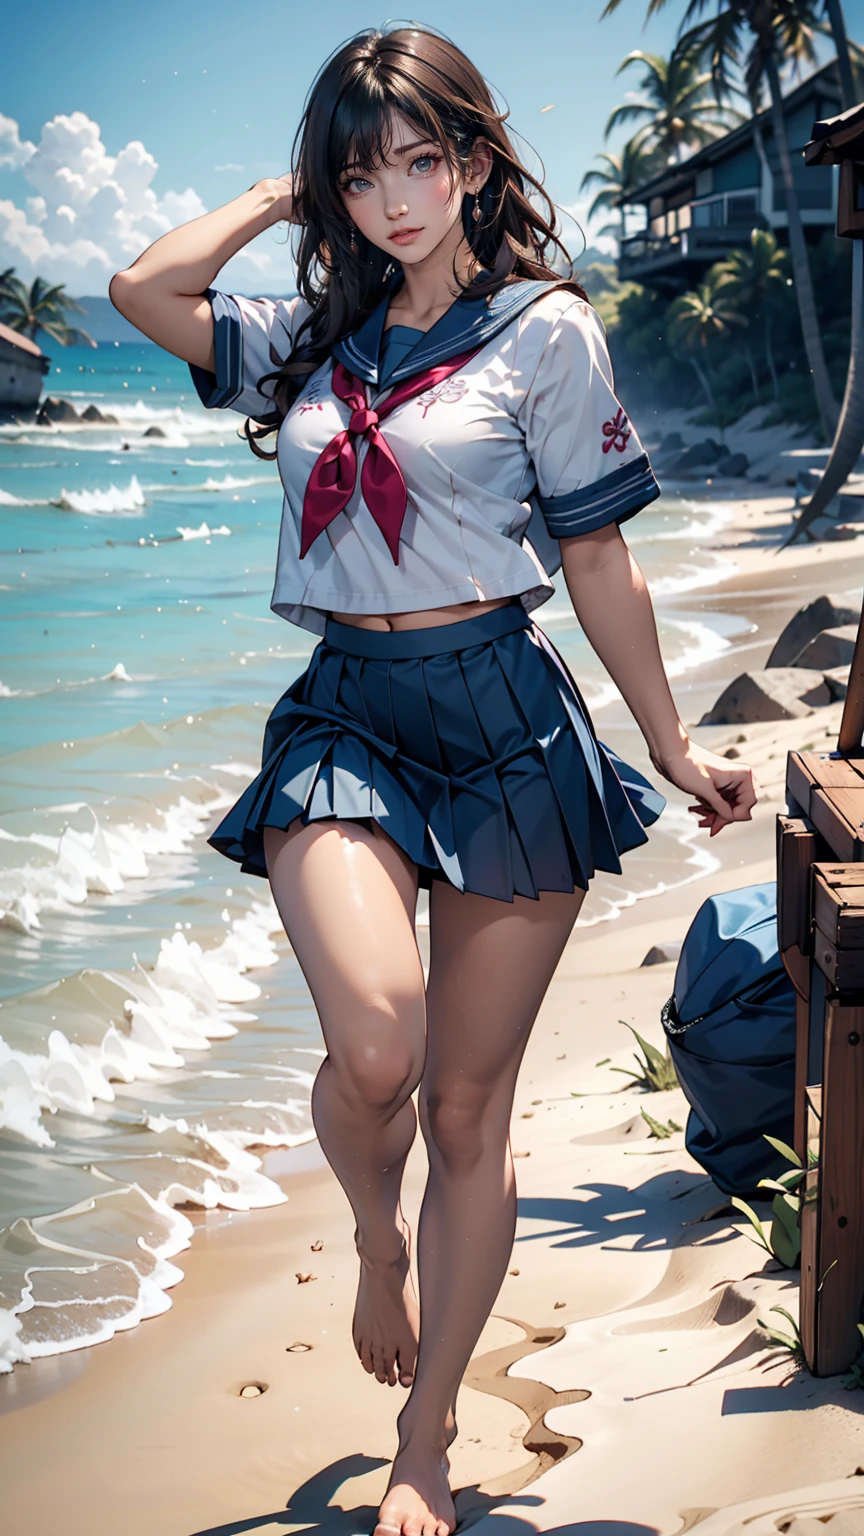 японские женщины、Полудлинный、сексуальные пропорции、старшеклассница、Летняя матросская форма、темно-синяя мини-юбка со складками、Бег босиком по песчаному пляжу на побережье Тихого океана、Следы остаются на песке